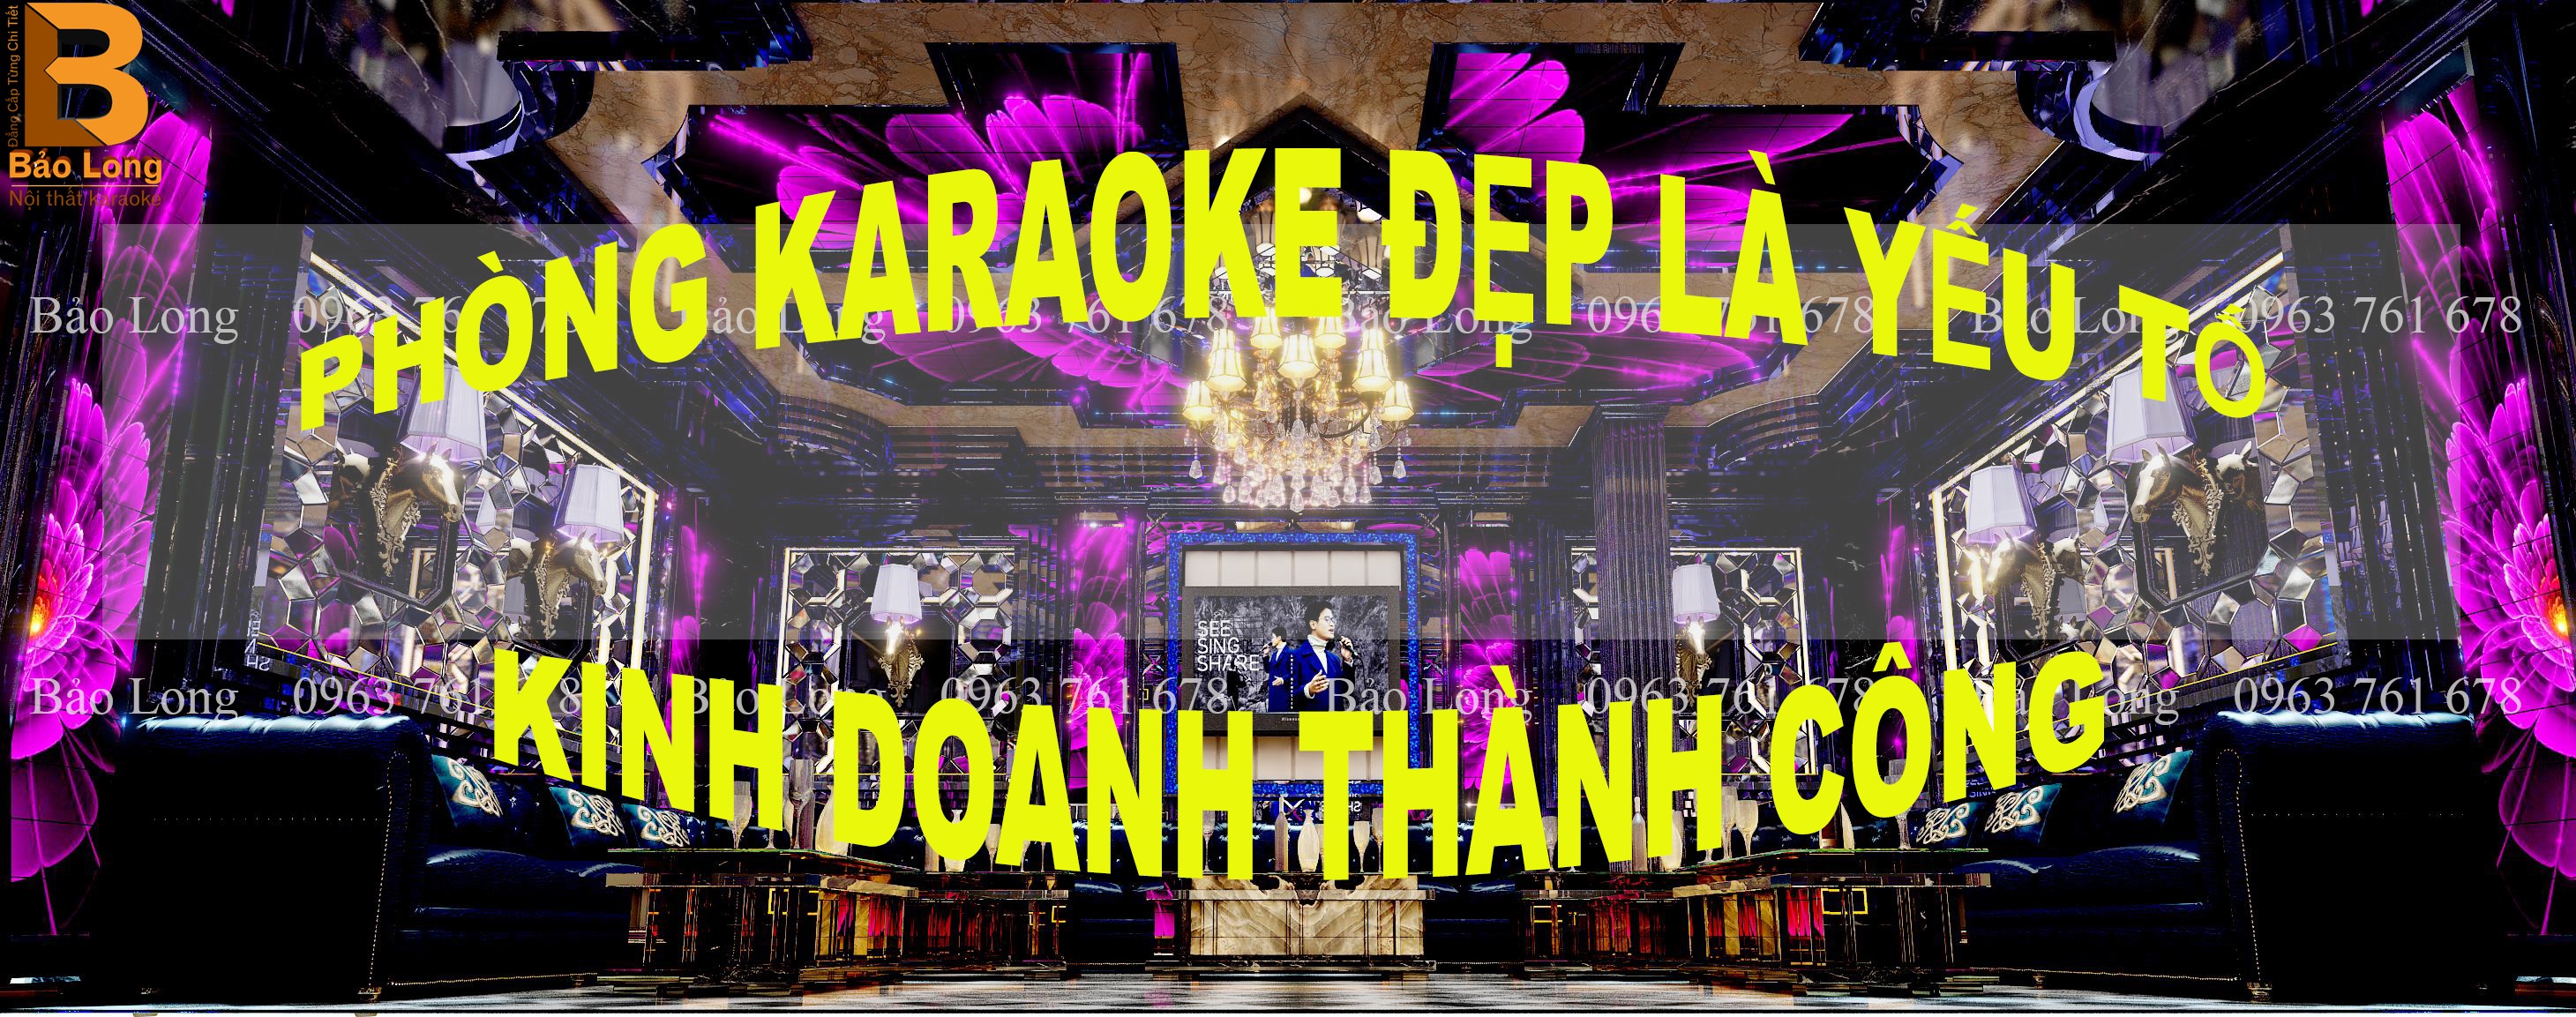 phòng karaoke đẹp là yếu tố để kinh doanh thành công